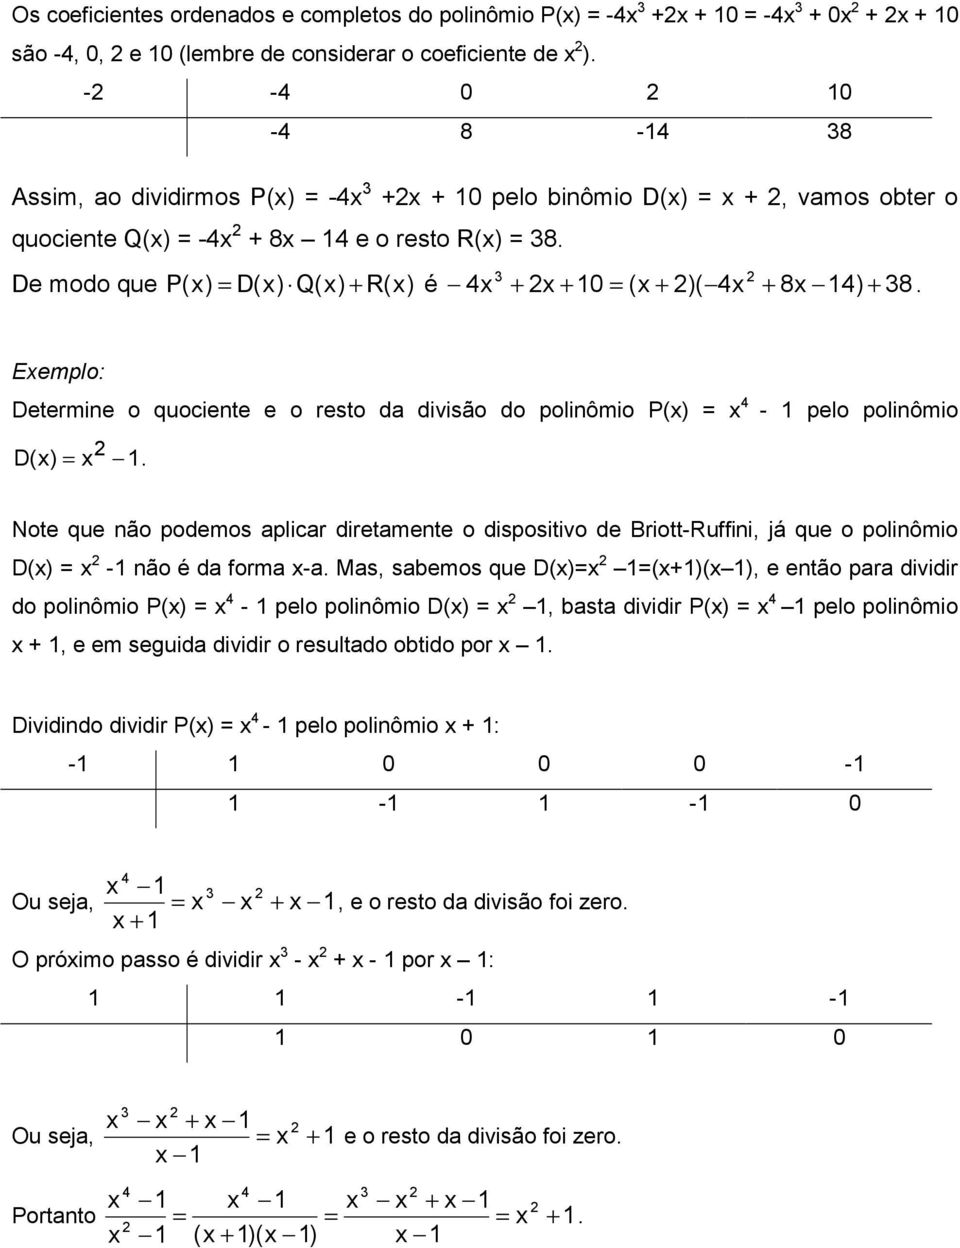 Eemplo: Determine o quociente e o resto d divisão do polinômio P() - pelo polinômio D(). Note que não podemos plicr diretmente o dispositivo de Briott-Ruffini, já que o polinômio D() - não é d form -.